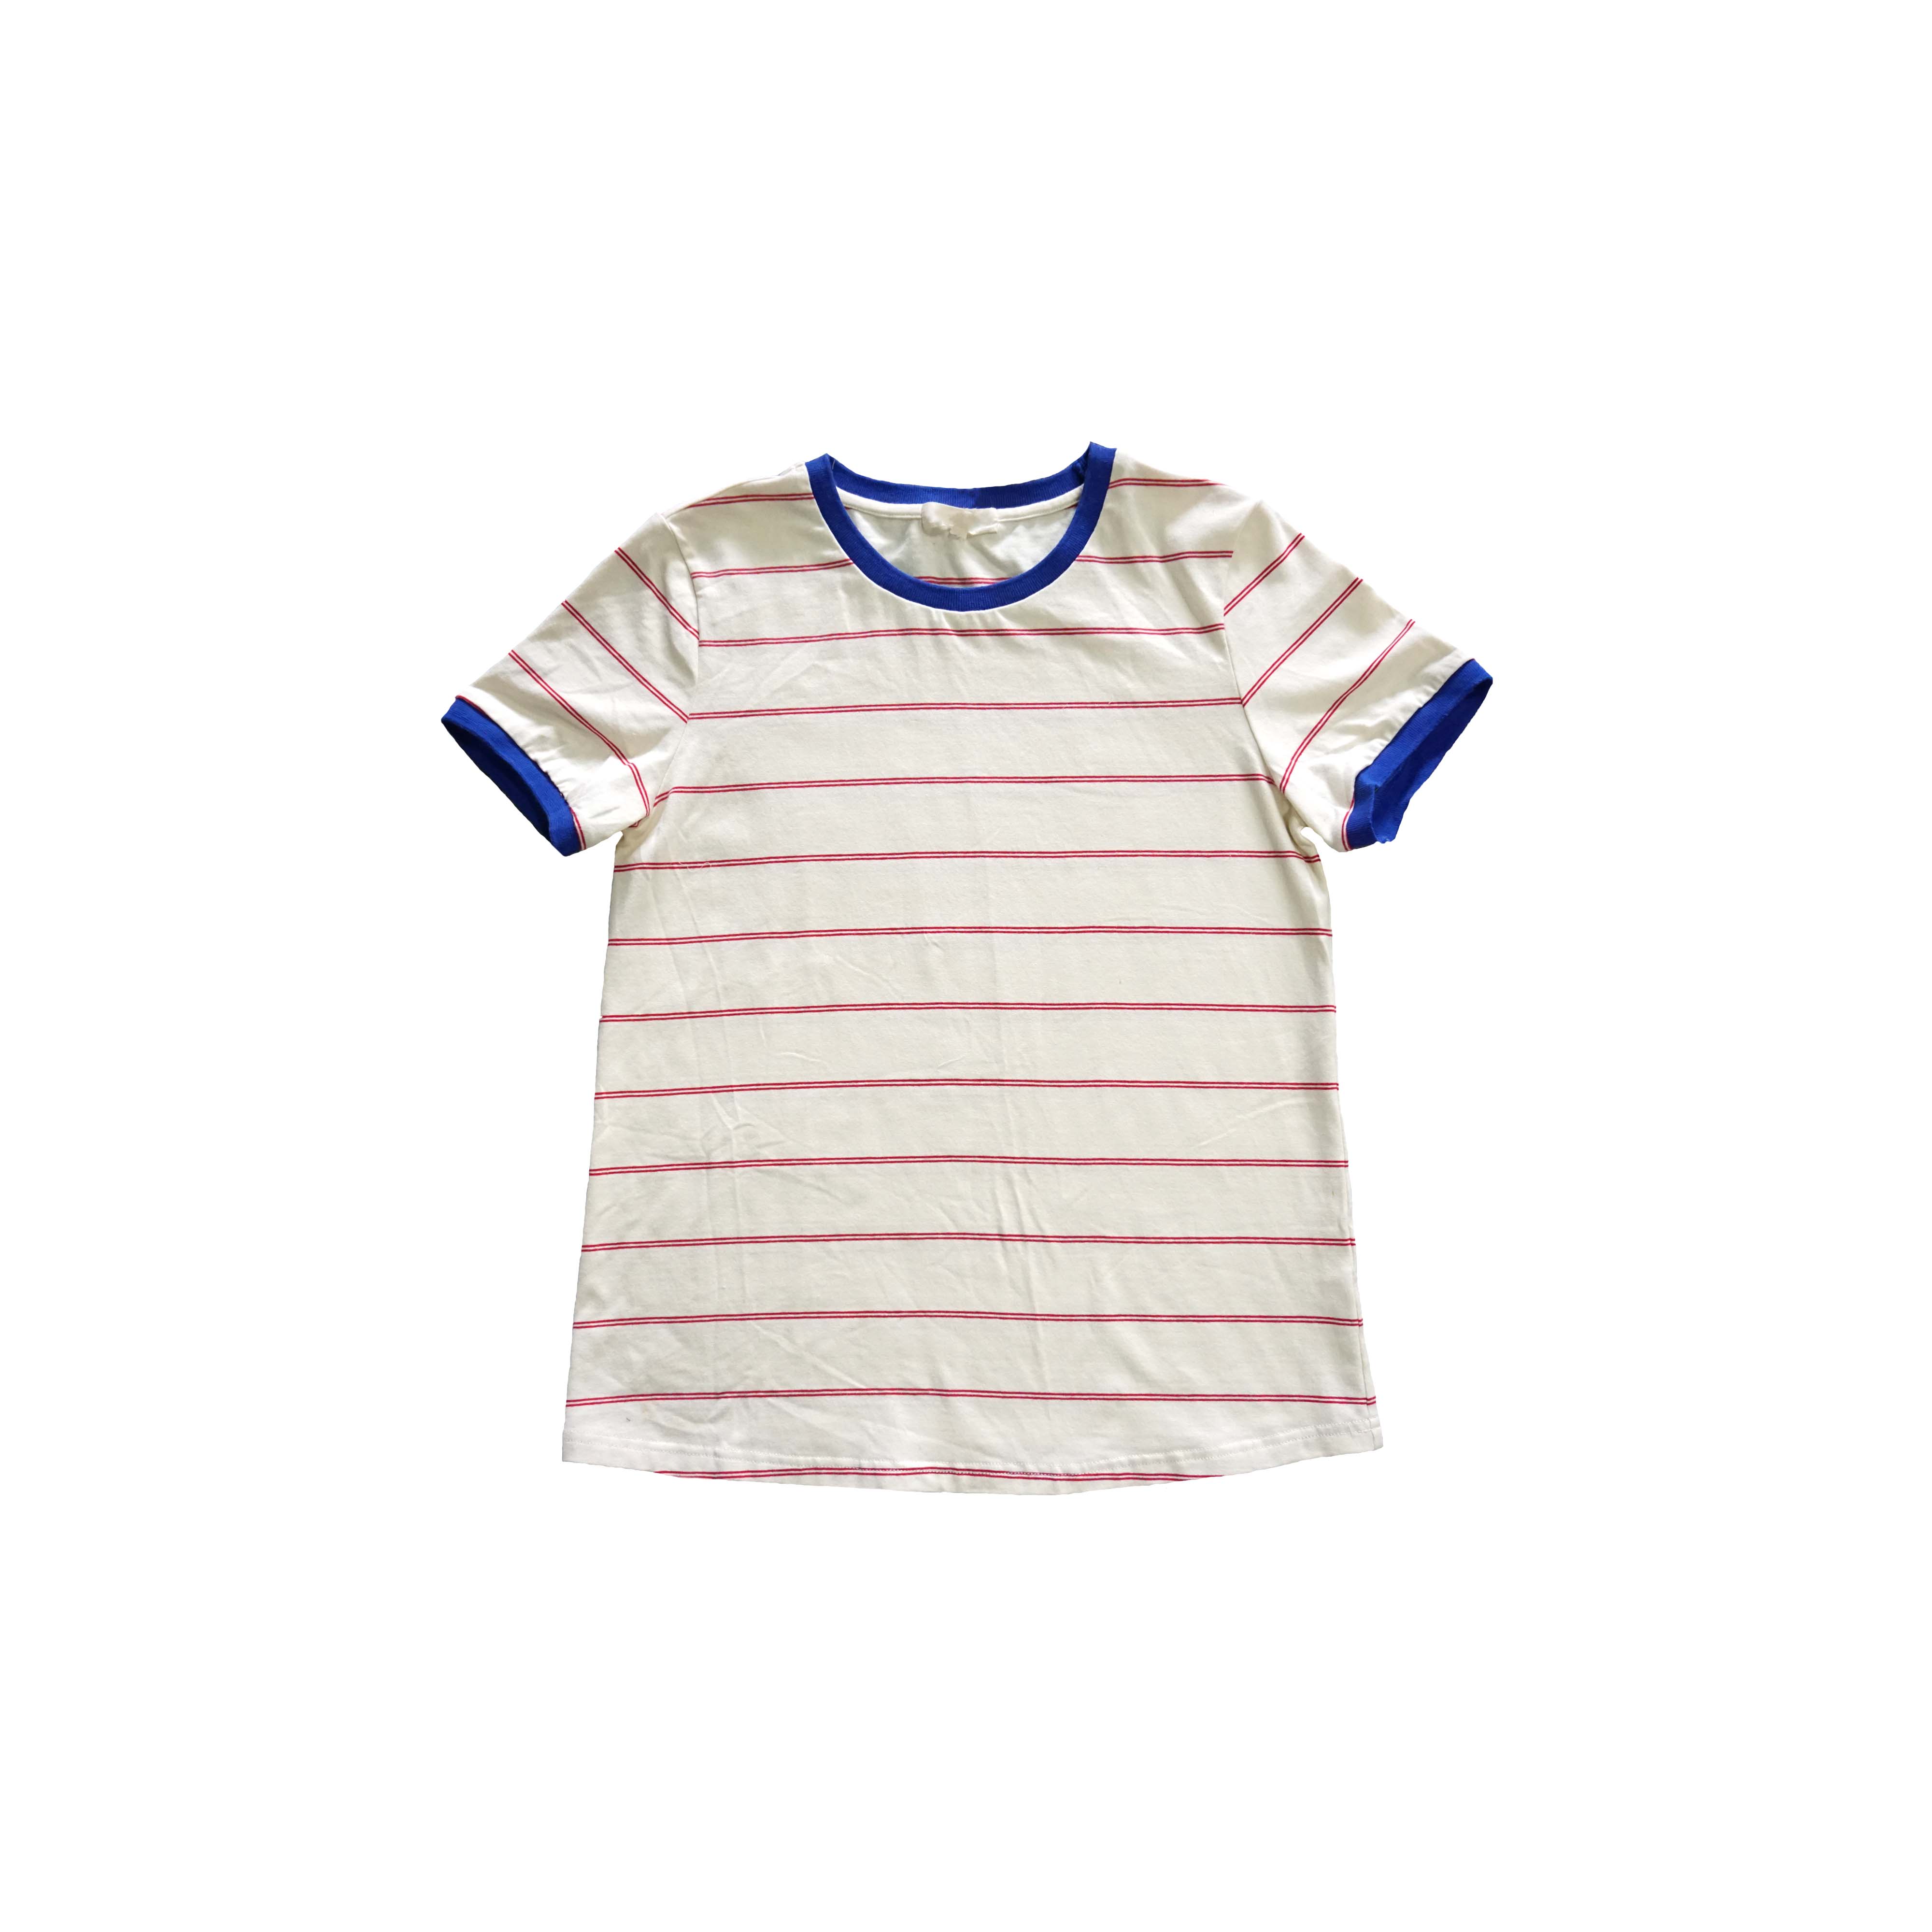 vienkāršs un moderns sarkansvītrains T-krekls